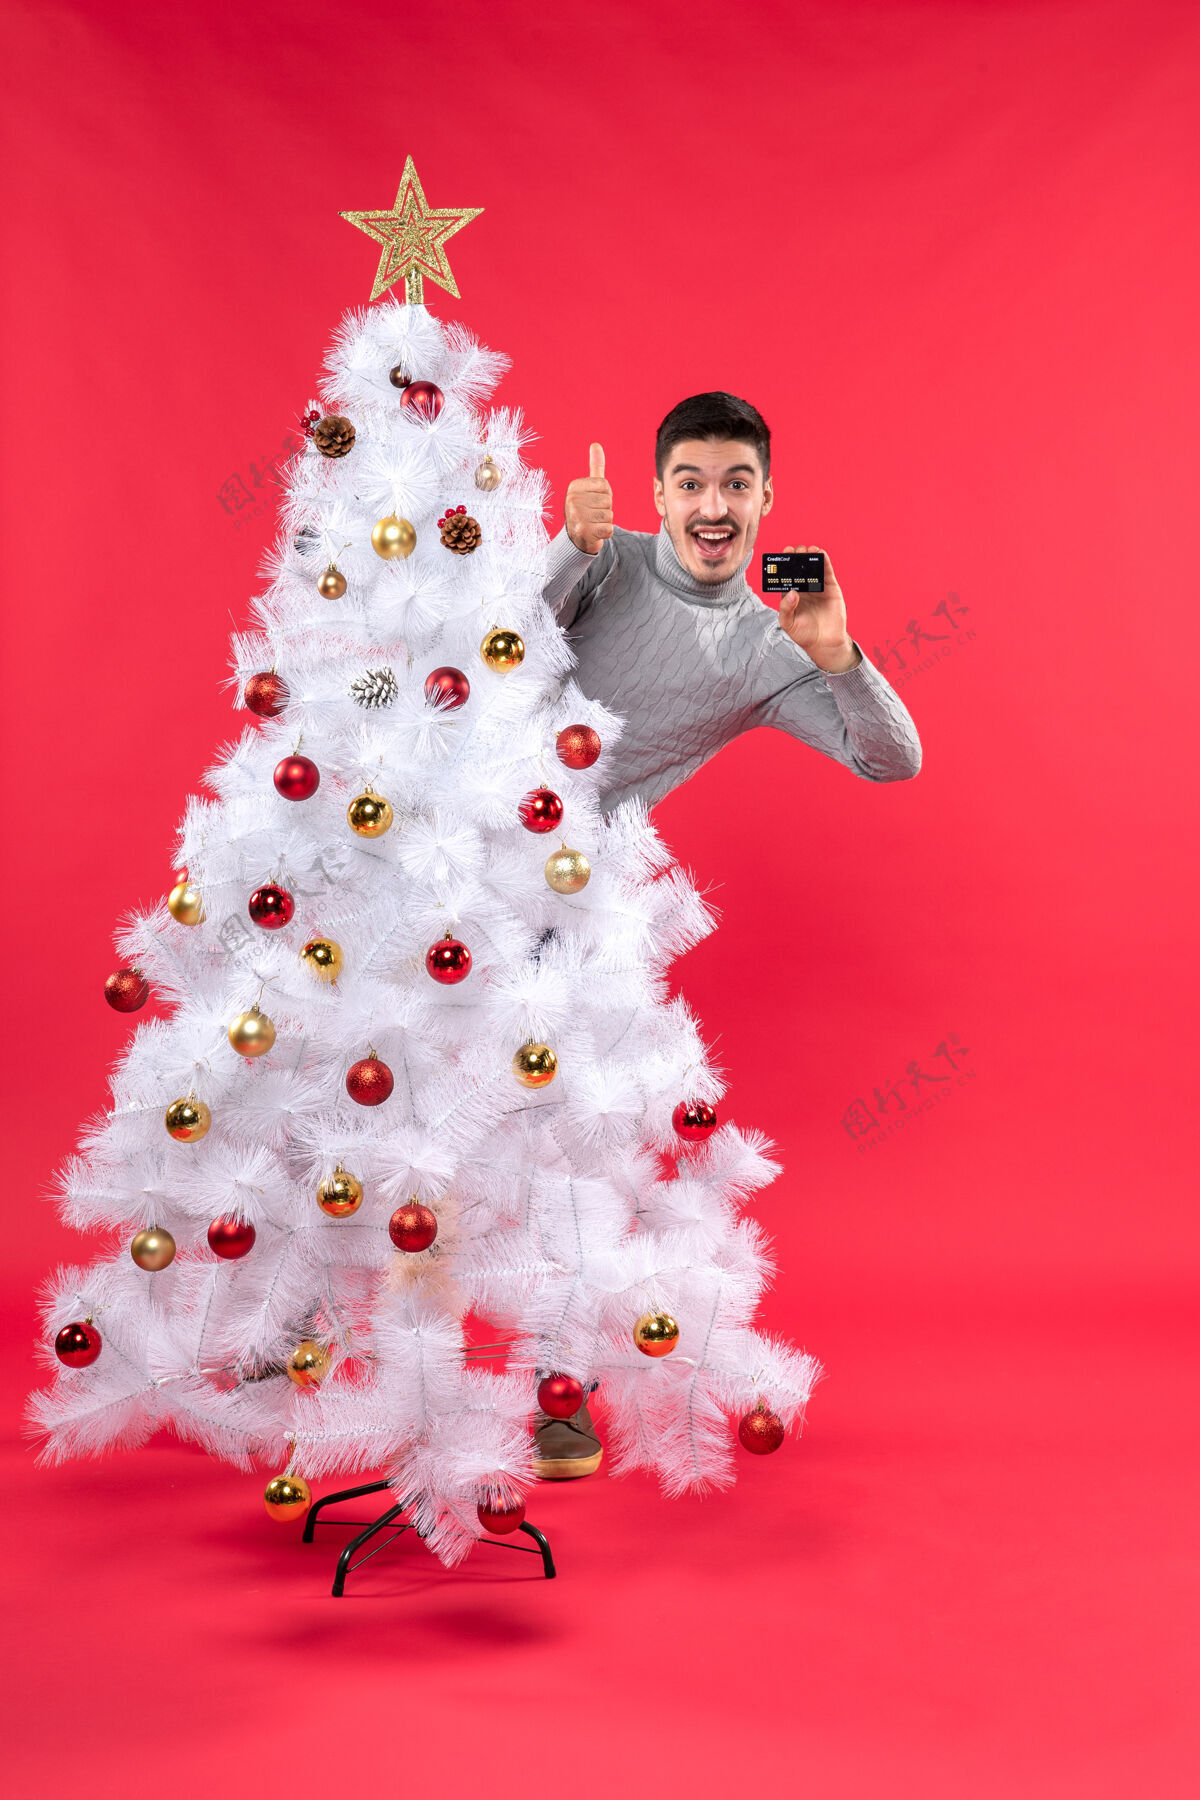 帽子圣诞气氛 情绪激动的家伙站在装饰好的圣诞树后面 做着ok的手势雪人圣诞装饰